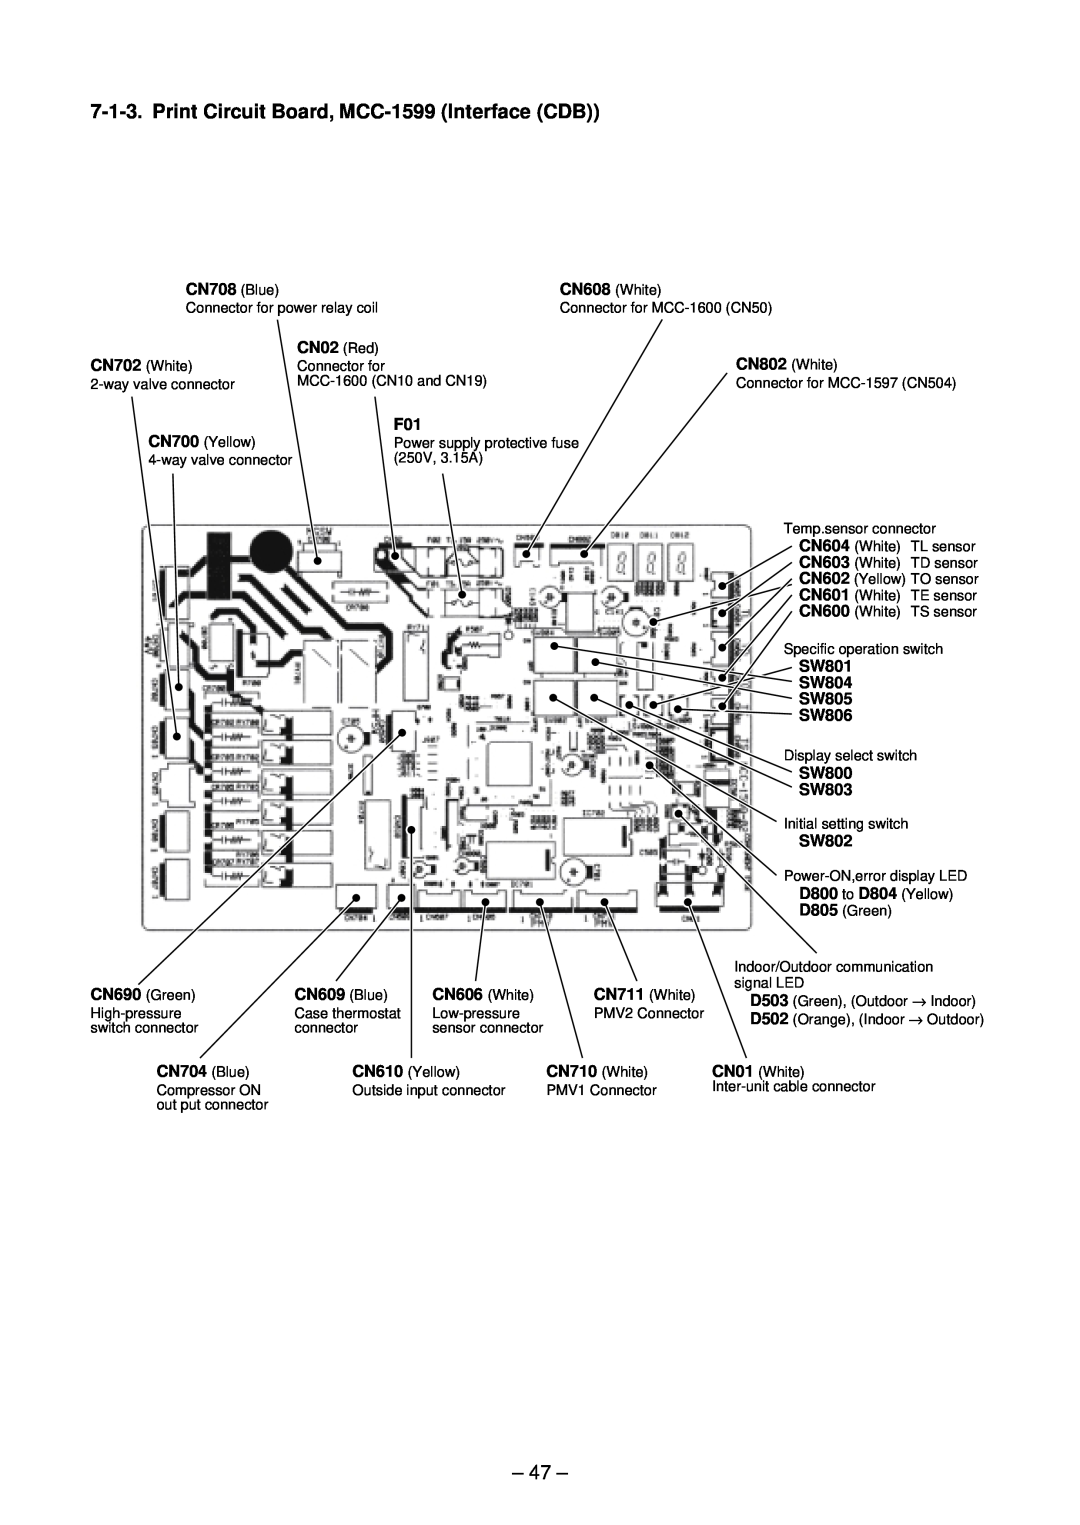 Toshiba RAV-SM2244AT7ZG, RAV-SM2804AT8ZG-E, RAV-SM2244AT8ZG-E, RAV-SM2804AT7Z Print Circuit Board, MCC-1599Interface CDB, 47 